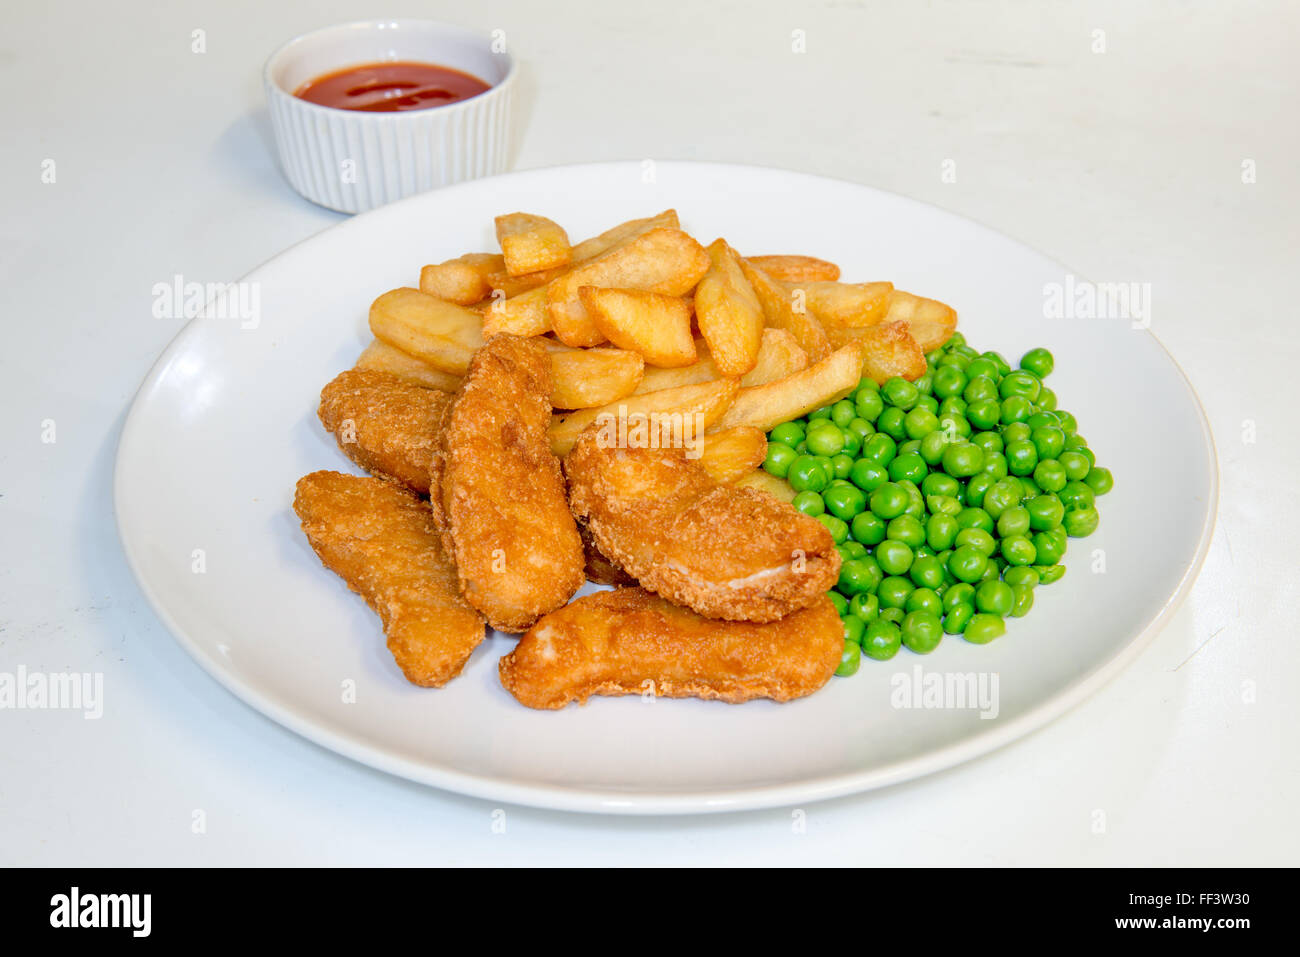 Repas nuggets de poulet avec des frites, petits pois et sauce tomate Banque D'Images